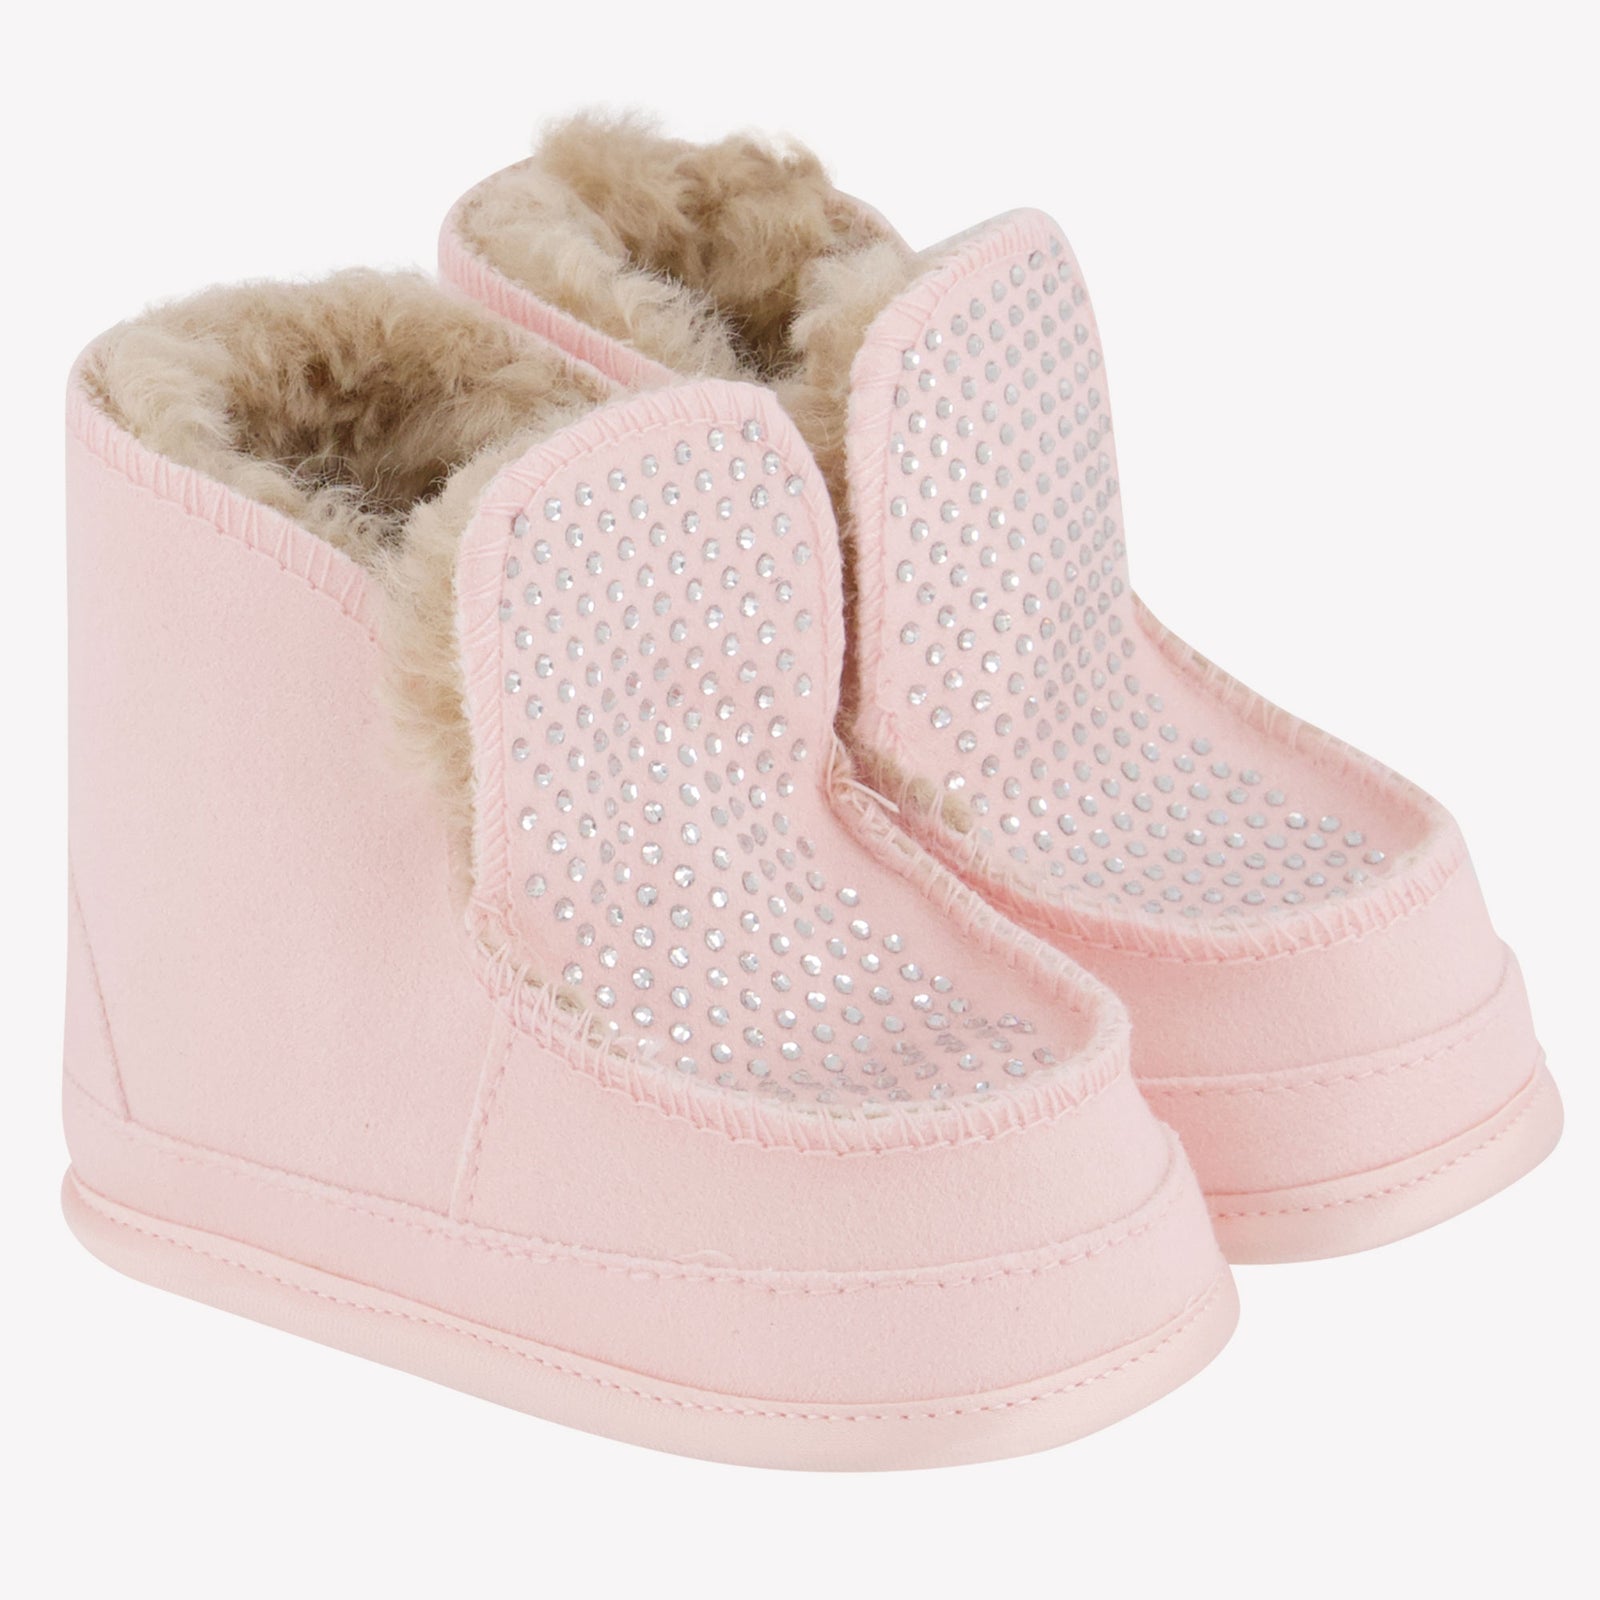 Monnalisa Zapatos de niñas de bebé rosa claro